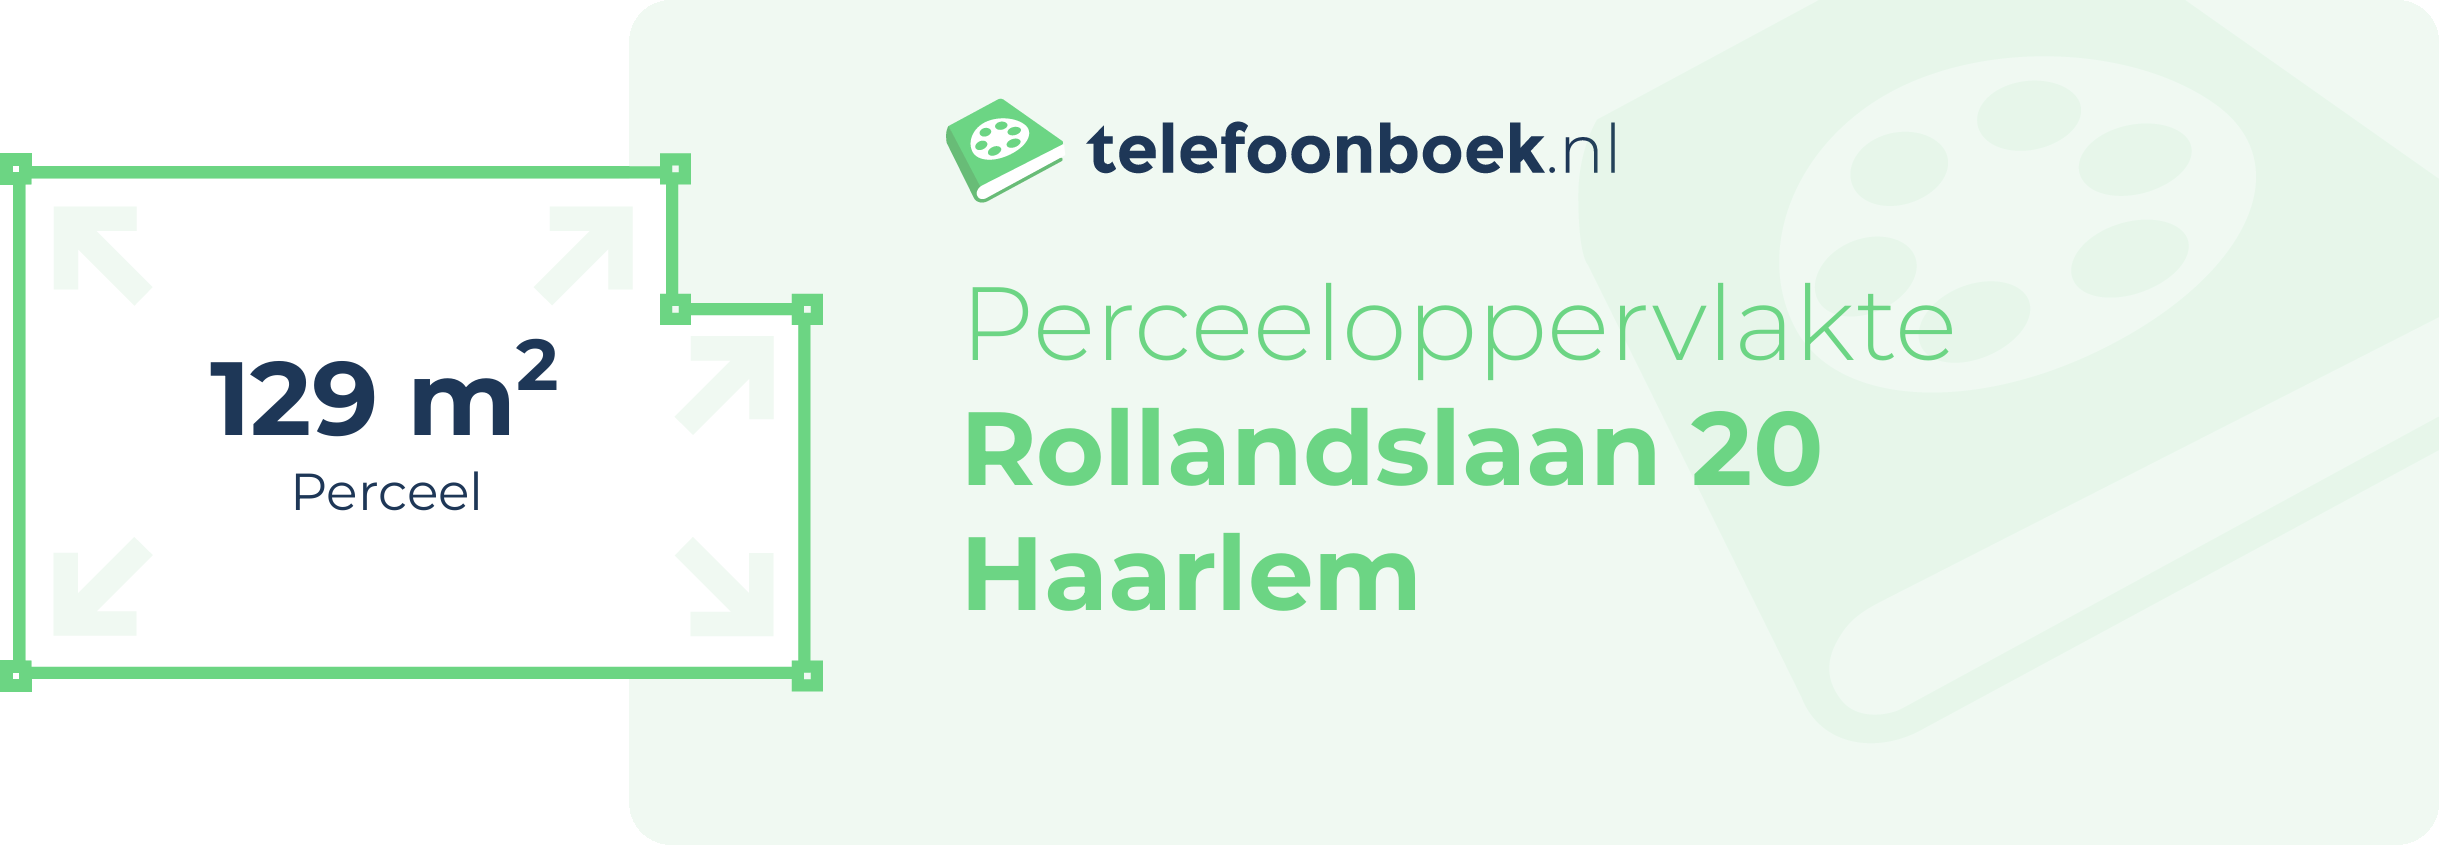 Perceeloppervlakte Rollandslaan 20 Haarlem